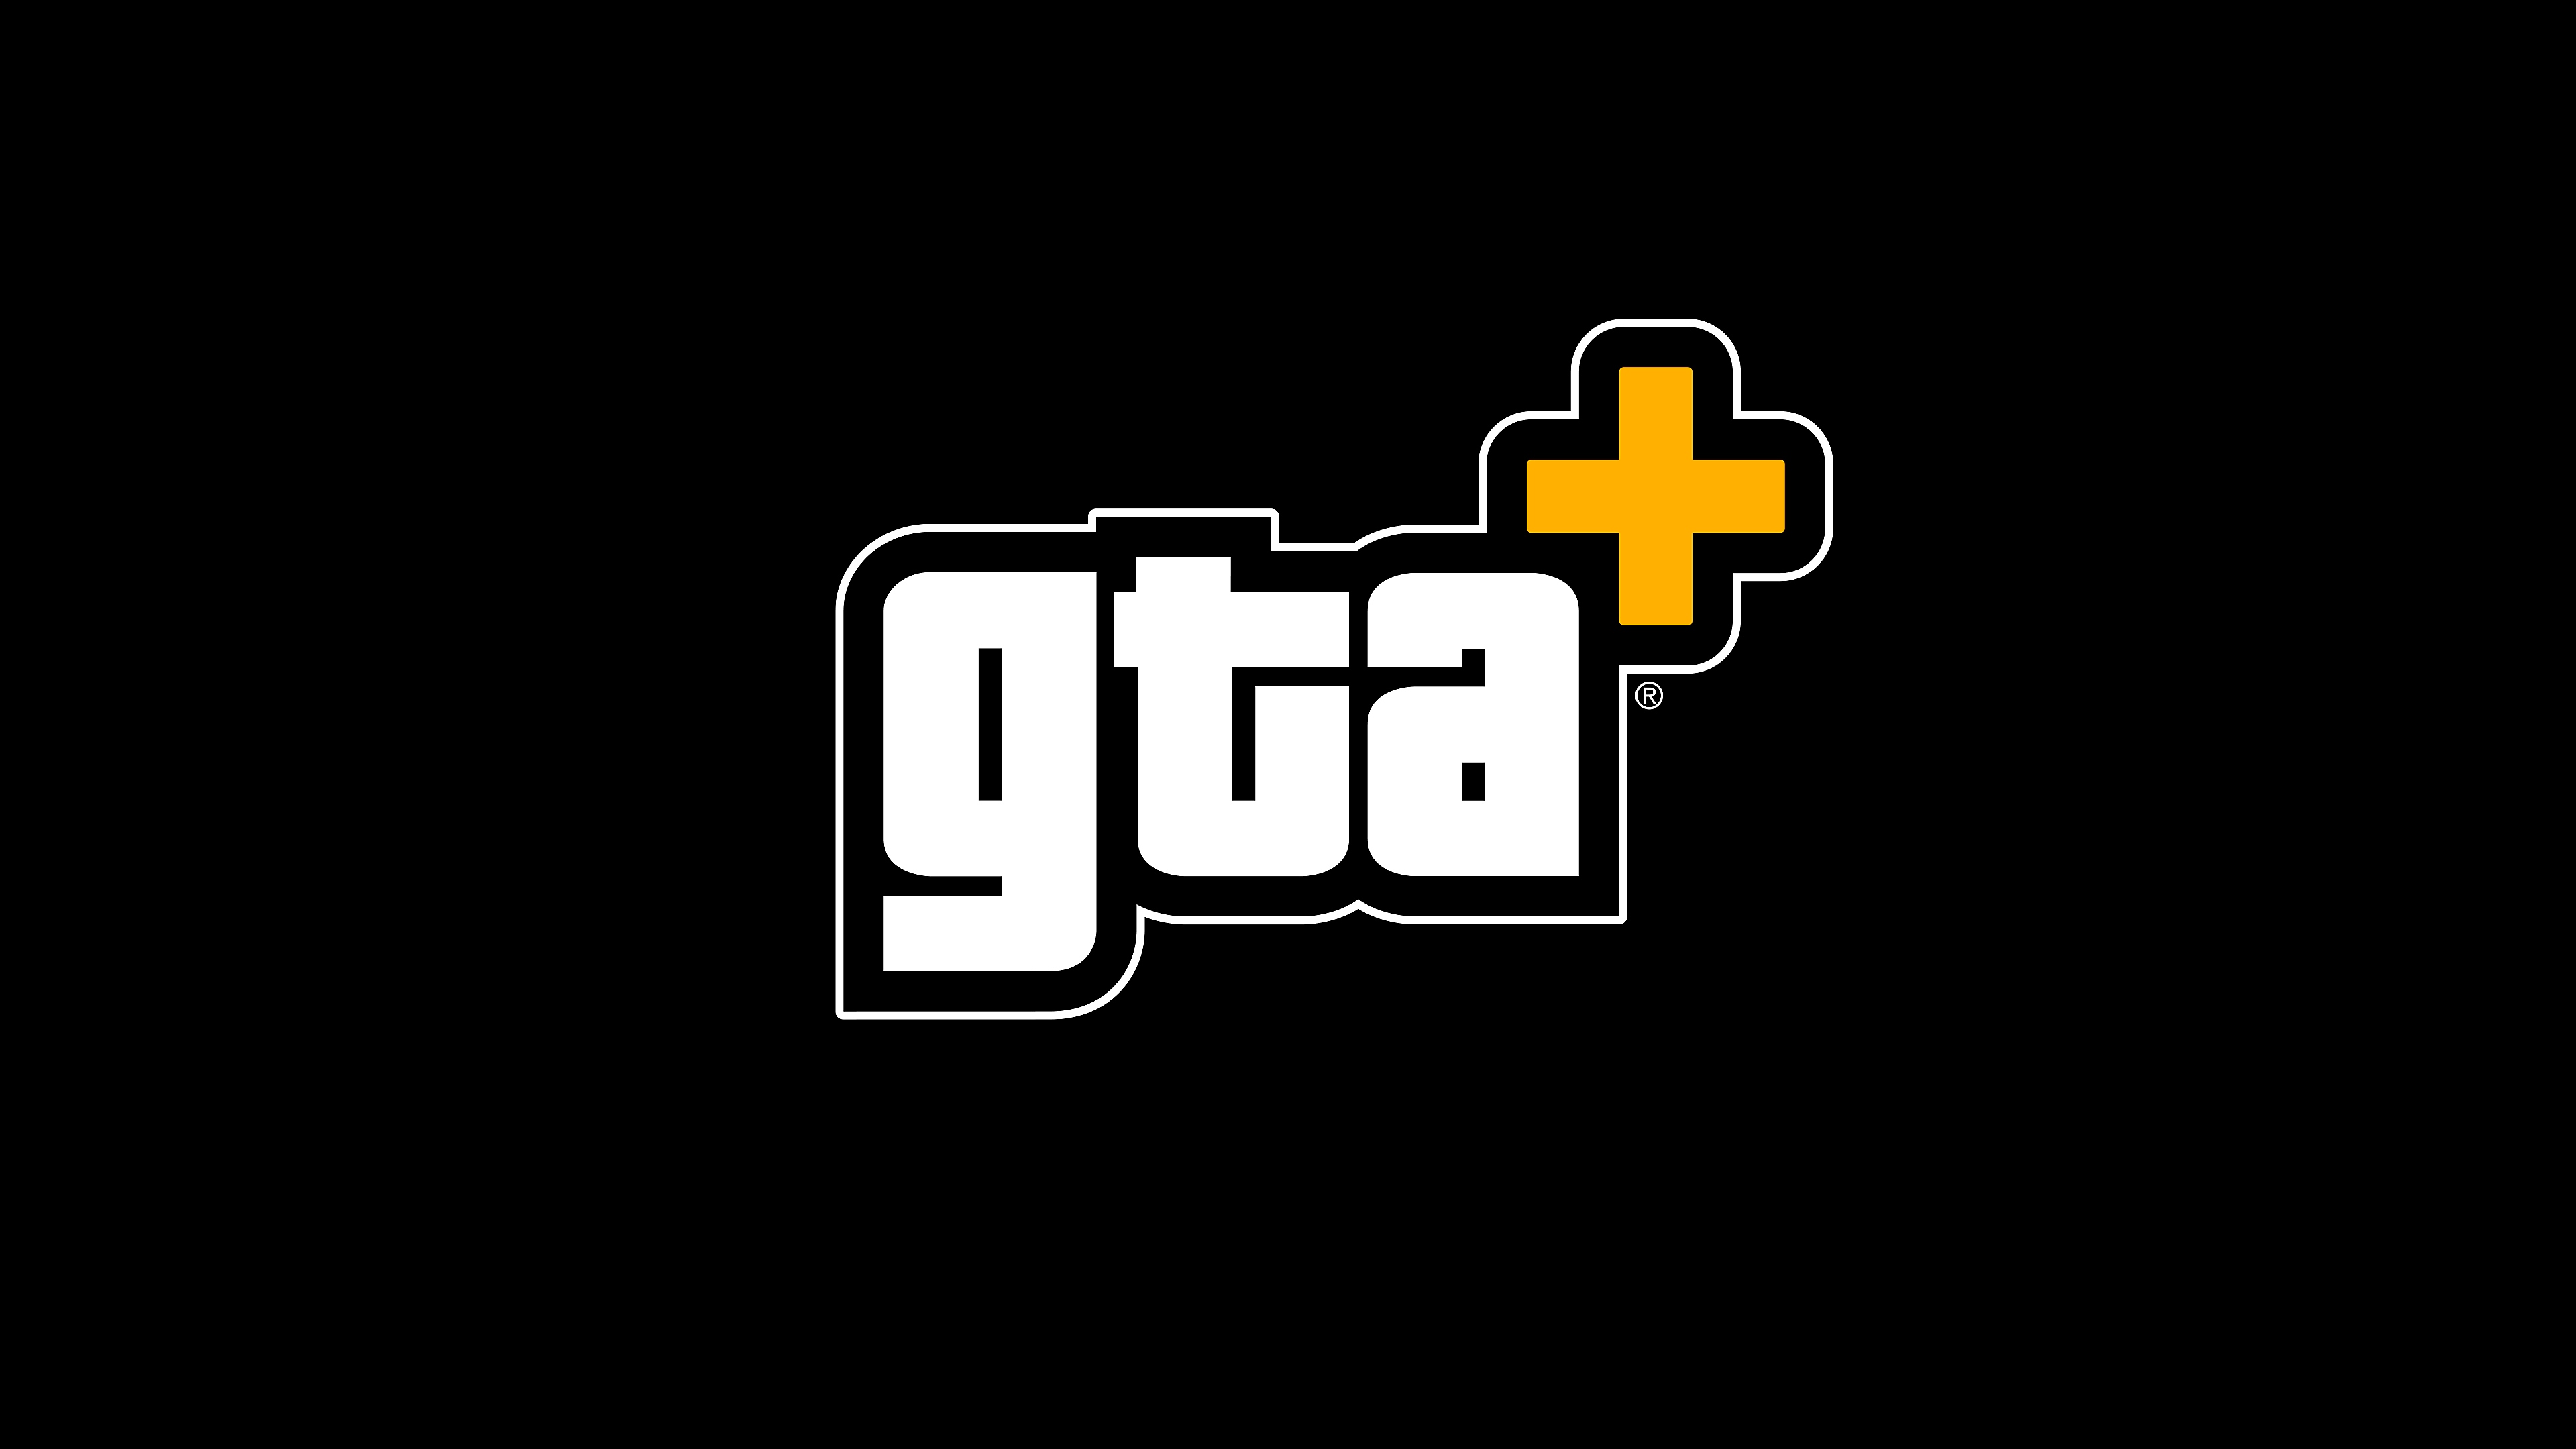 Assinatura GTA+ - arte principal mostrando o logo